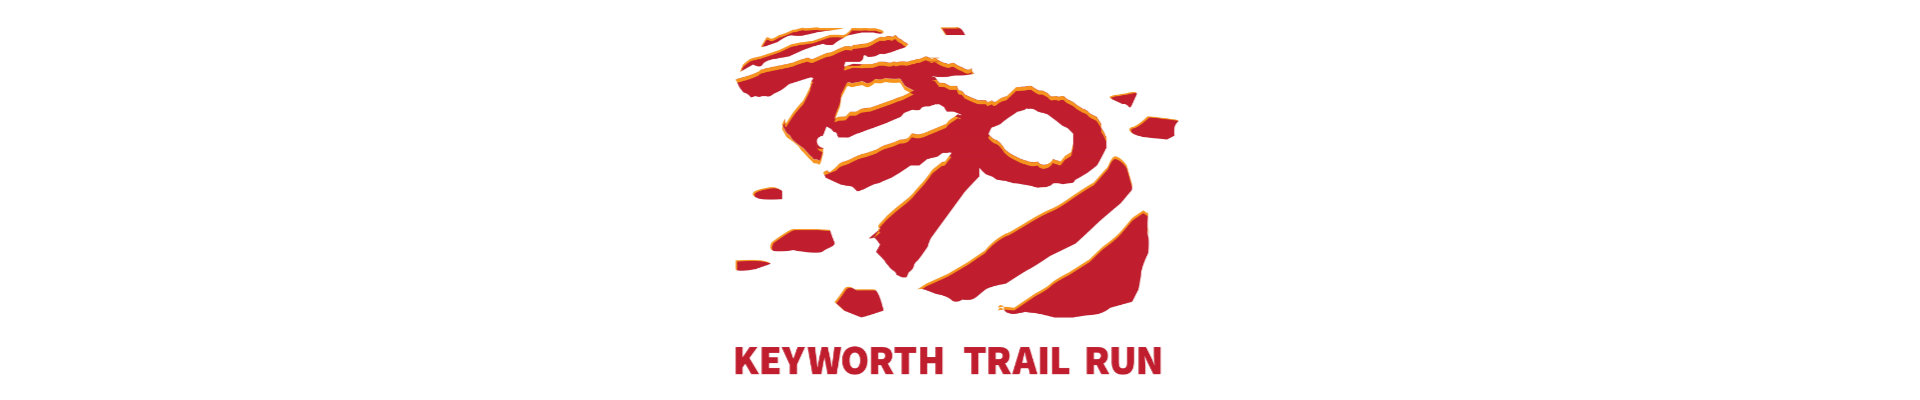 Keyworth Trail Run 2020